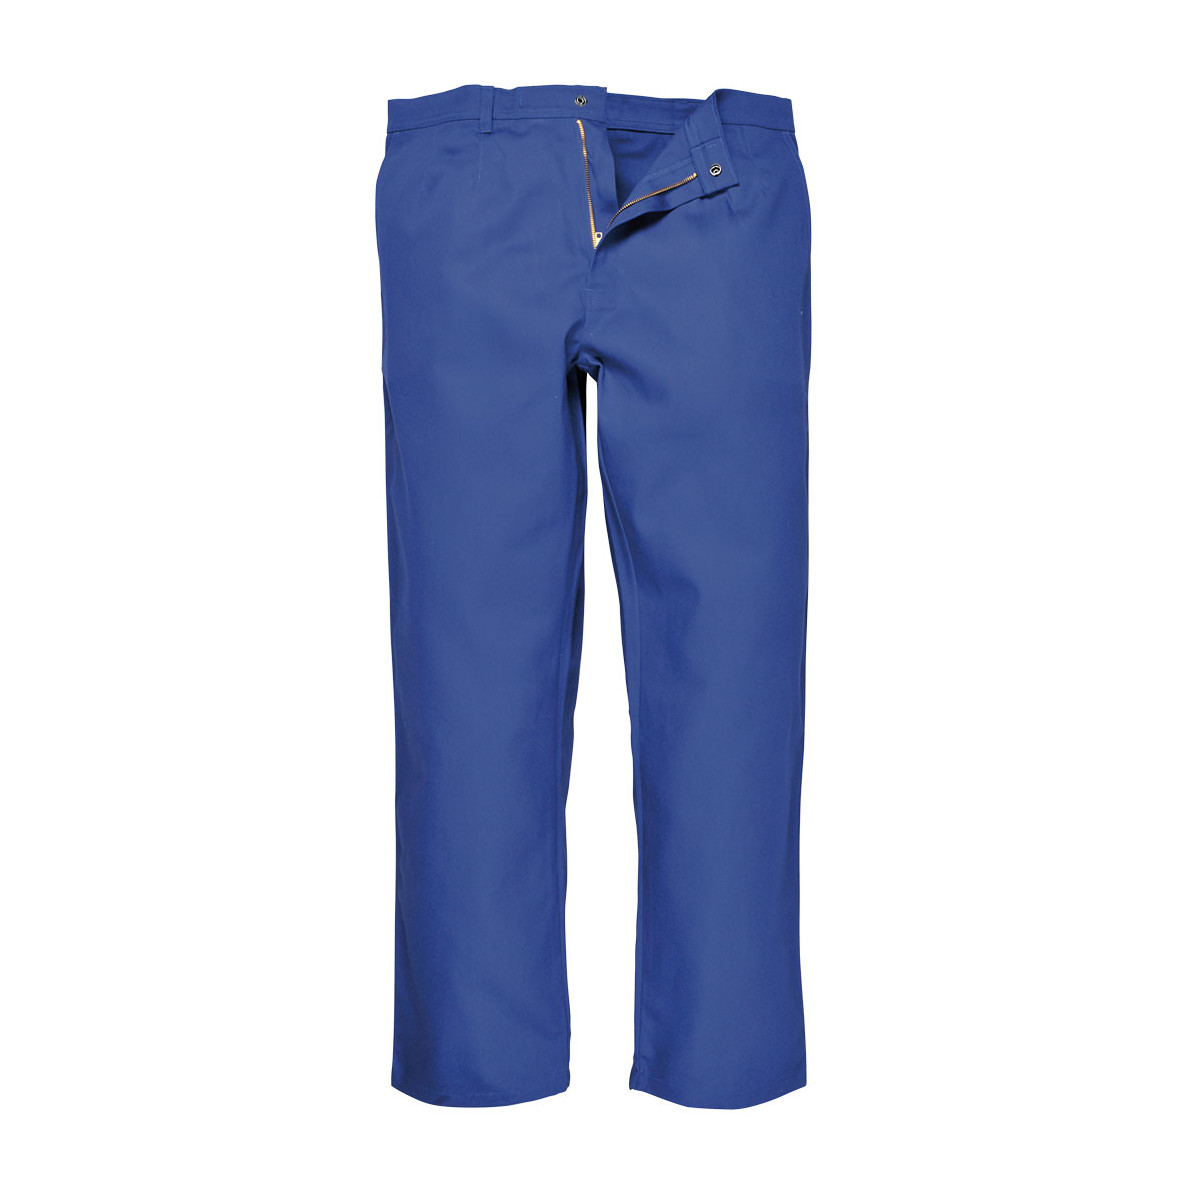 trudnopalna-odziez - Spodnie trudnopalne do pasa bizweld niebieskie BZ30 Portwest